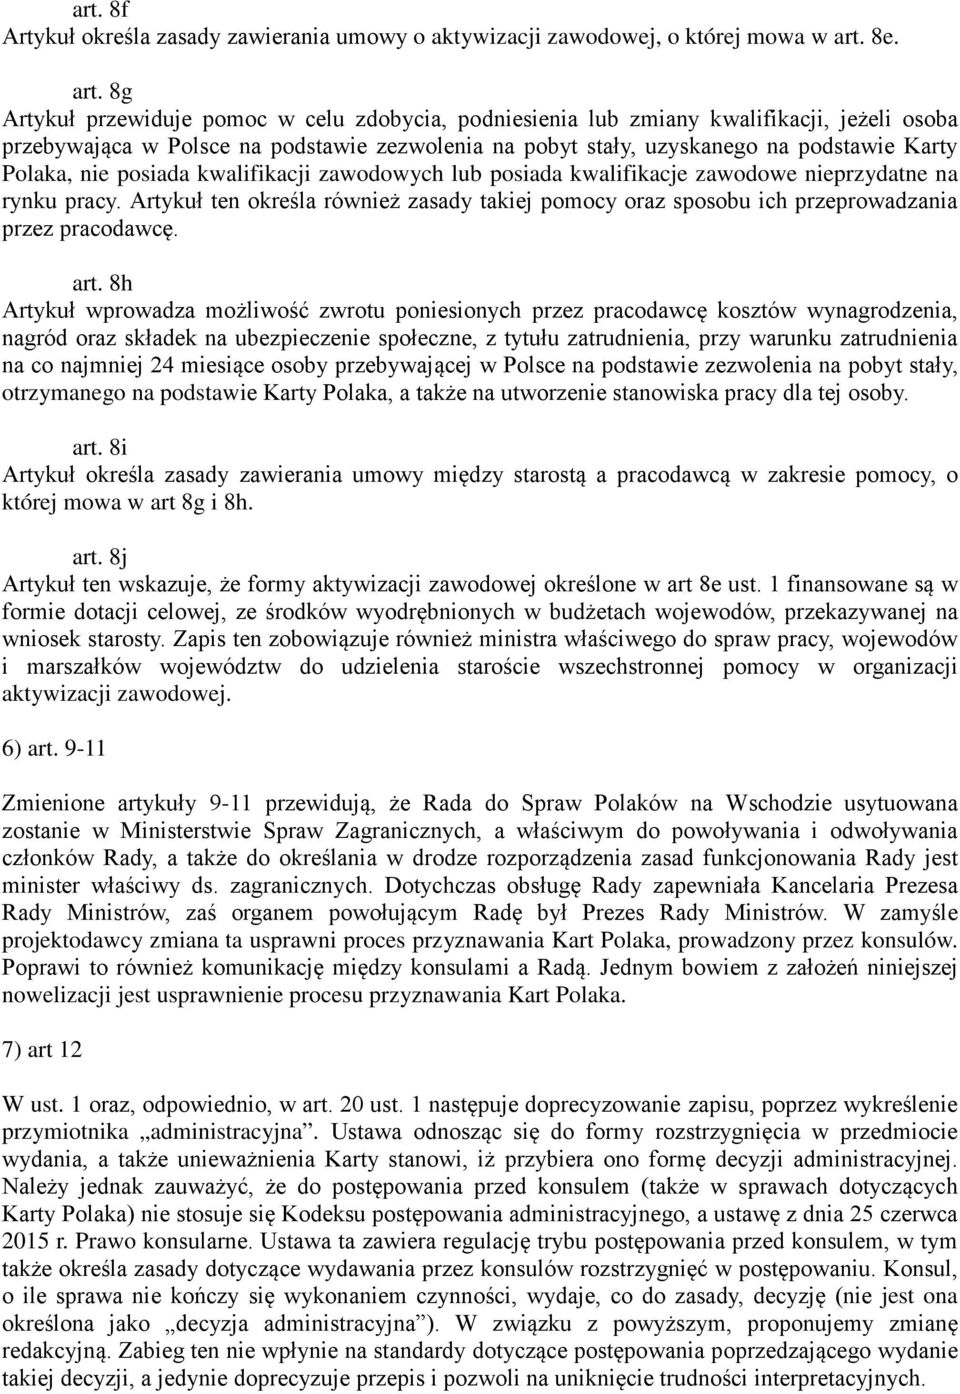 8g Artykuł przewiduje pomoc w celu zdobycia, podniesienia lub zmiany kwalifikacji, jeżeli osoba przebywająca w Polsce na podstawie zezwolenia na pobyt stały, uzyskanego na podstawie Karty Polaka, nie